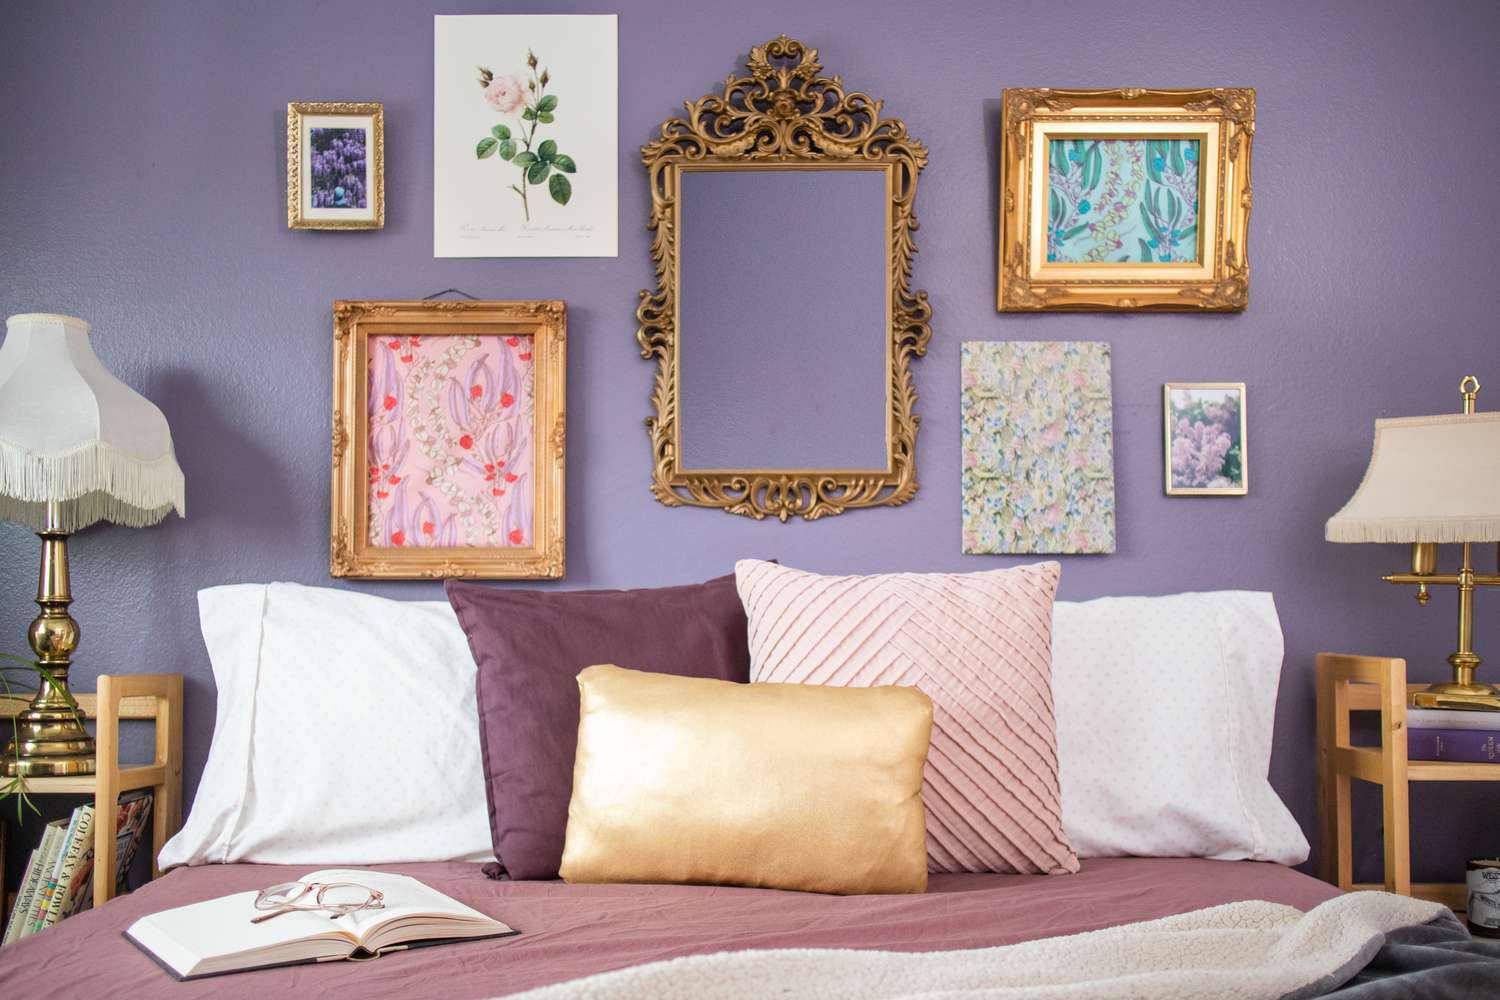 Lila dekoriertes Schlafzimmer mit verzierten Rahmen an lila Wänden